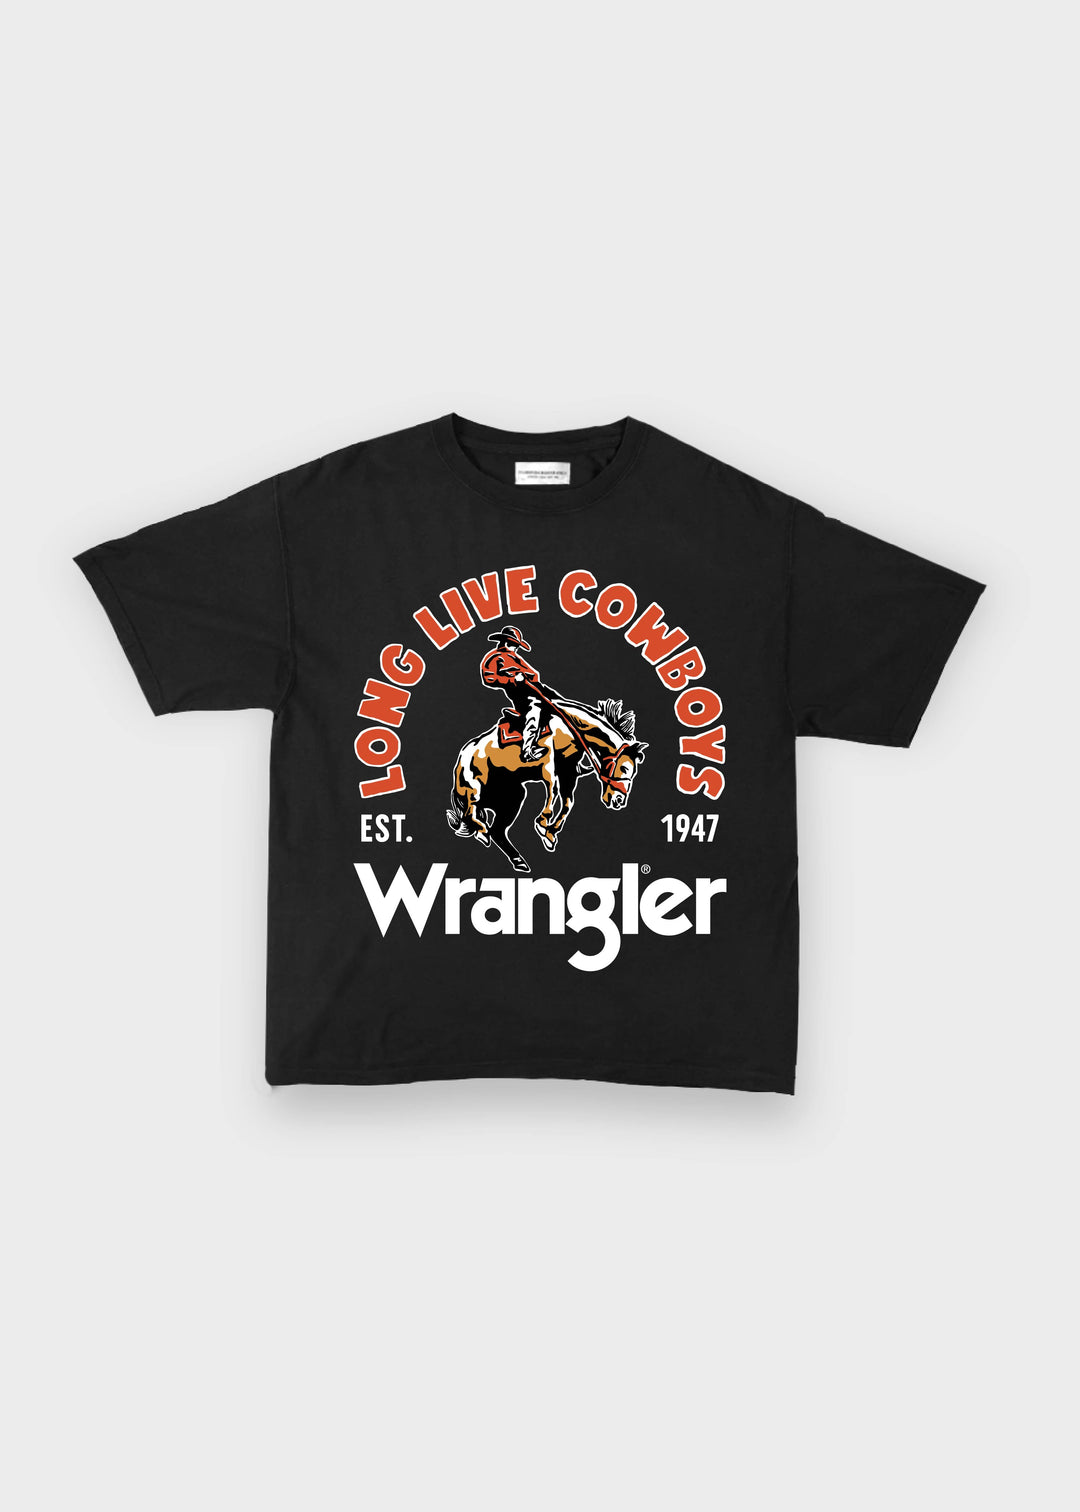 Wrangler x DCR (Preorder)